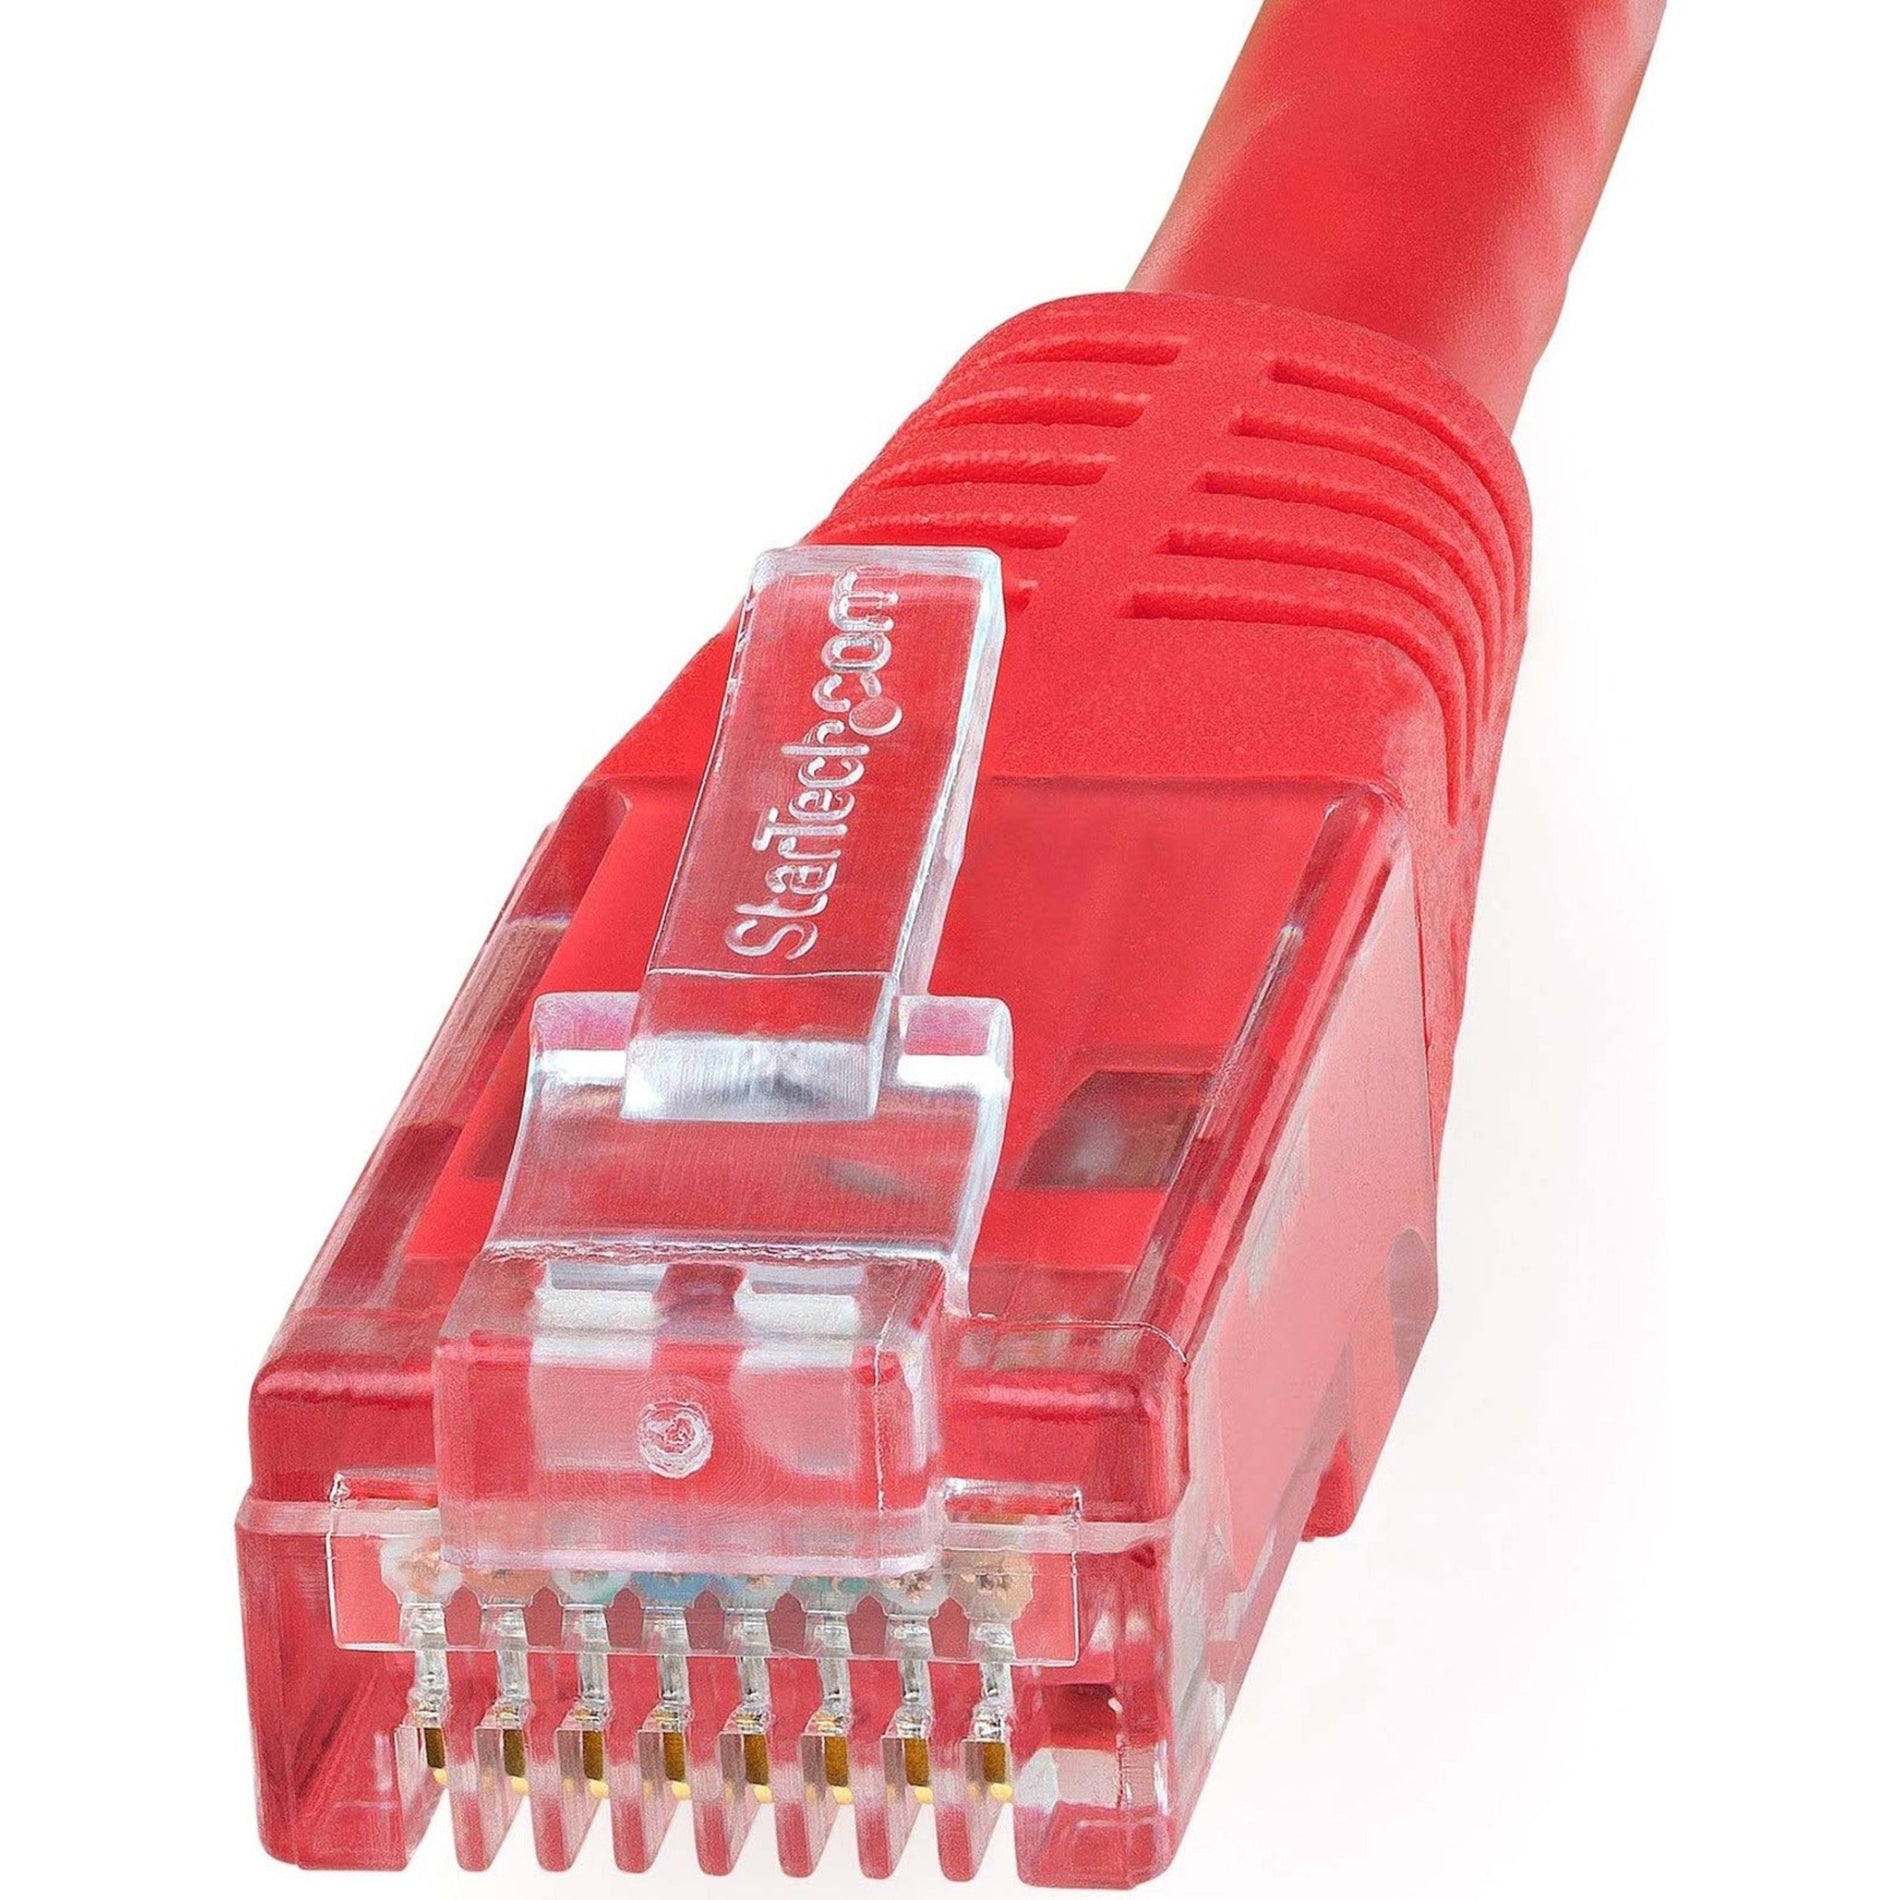 星那科科技股份有限公司 C6PATCH15RD 15英尺红色Cat6 UTP补丁电缆ETL验证，10 Gbit/s数据传输速率，镀金连接器